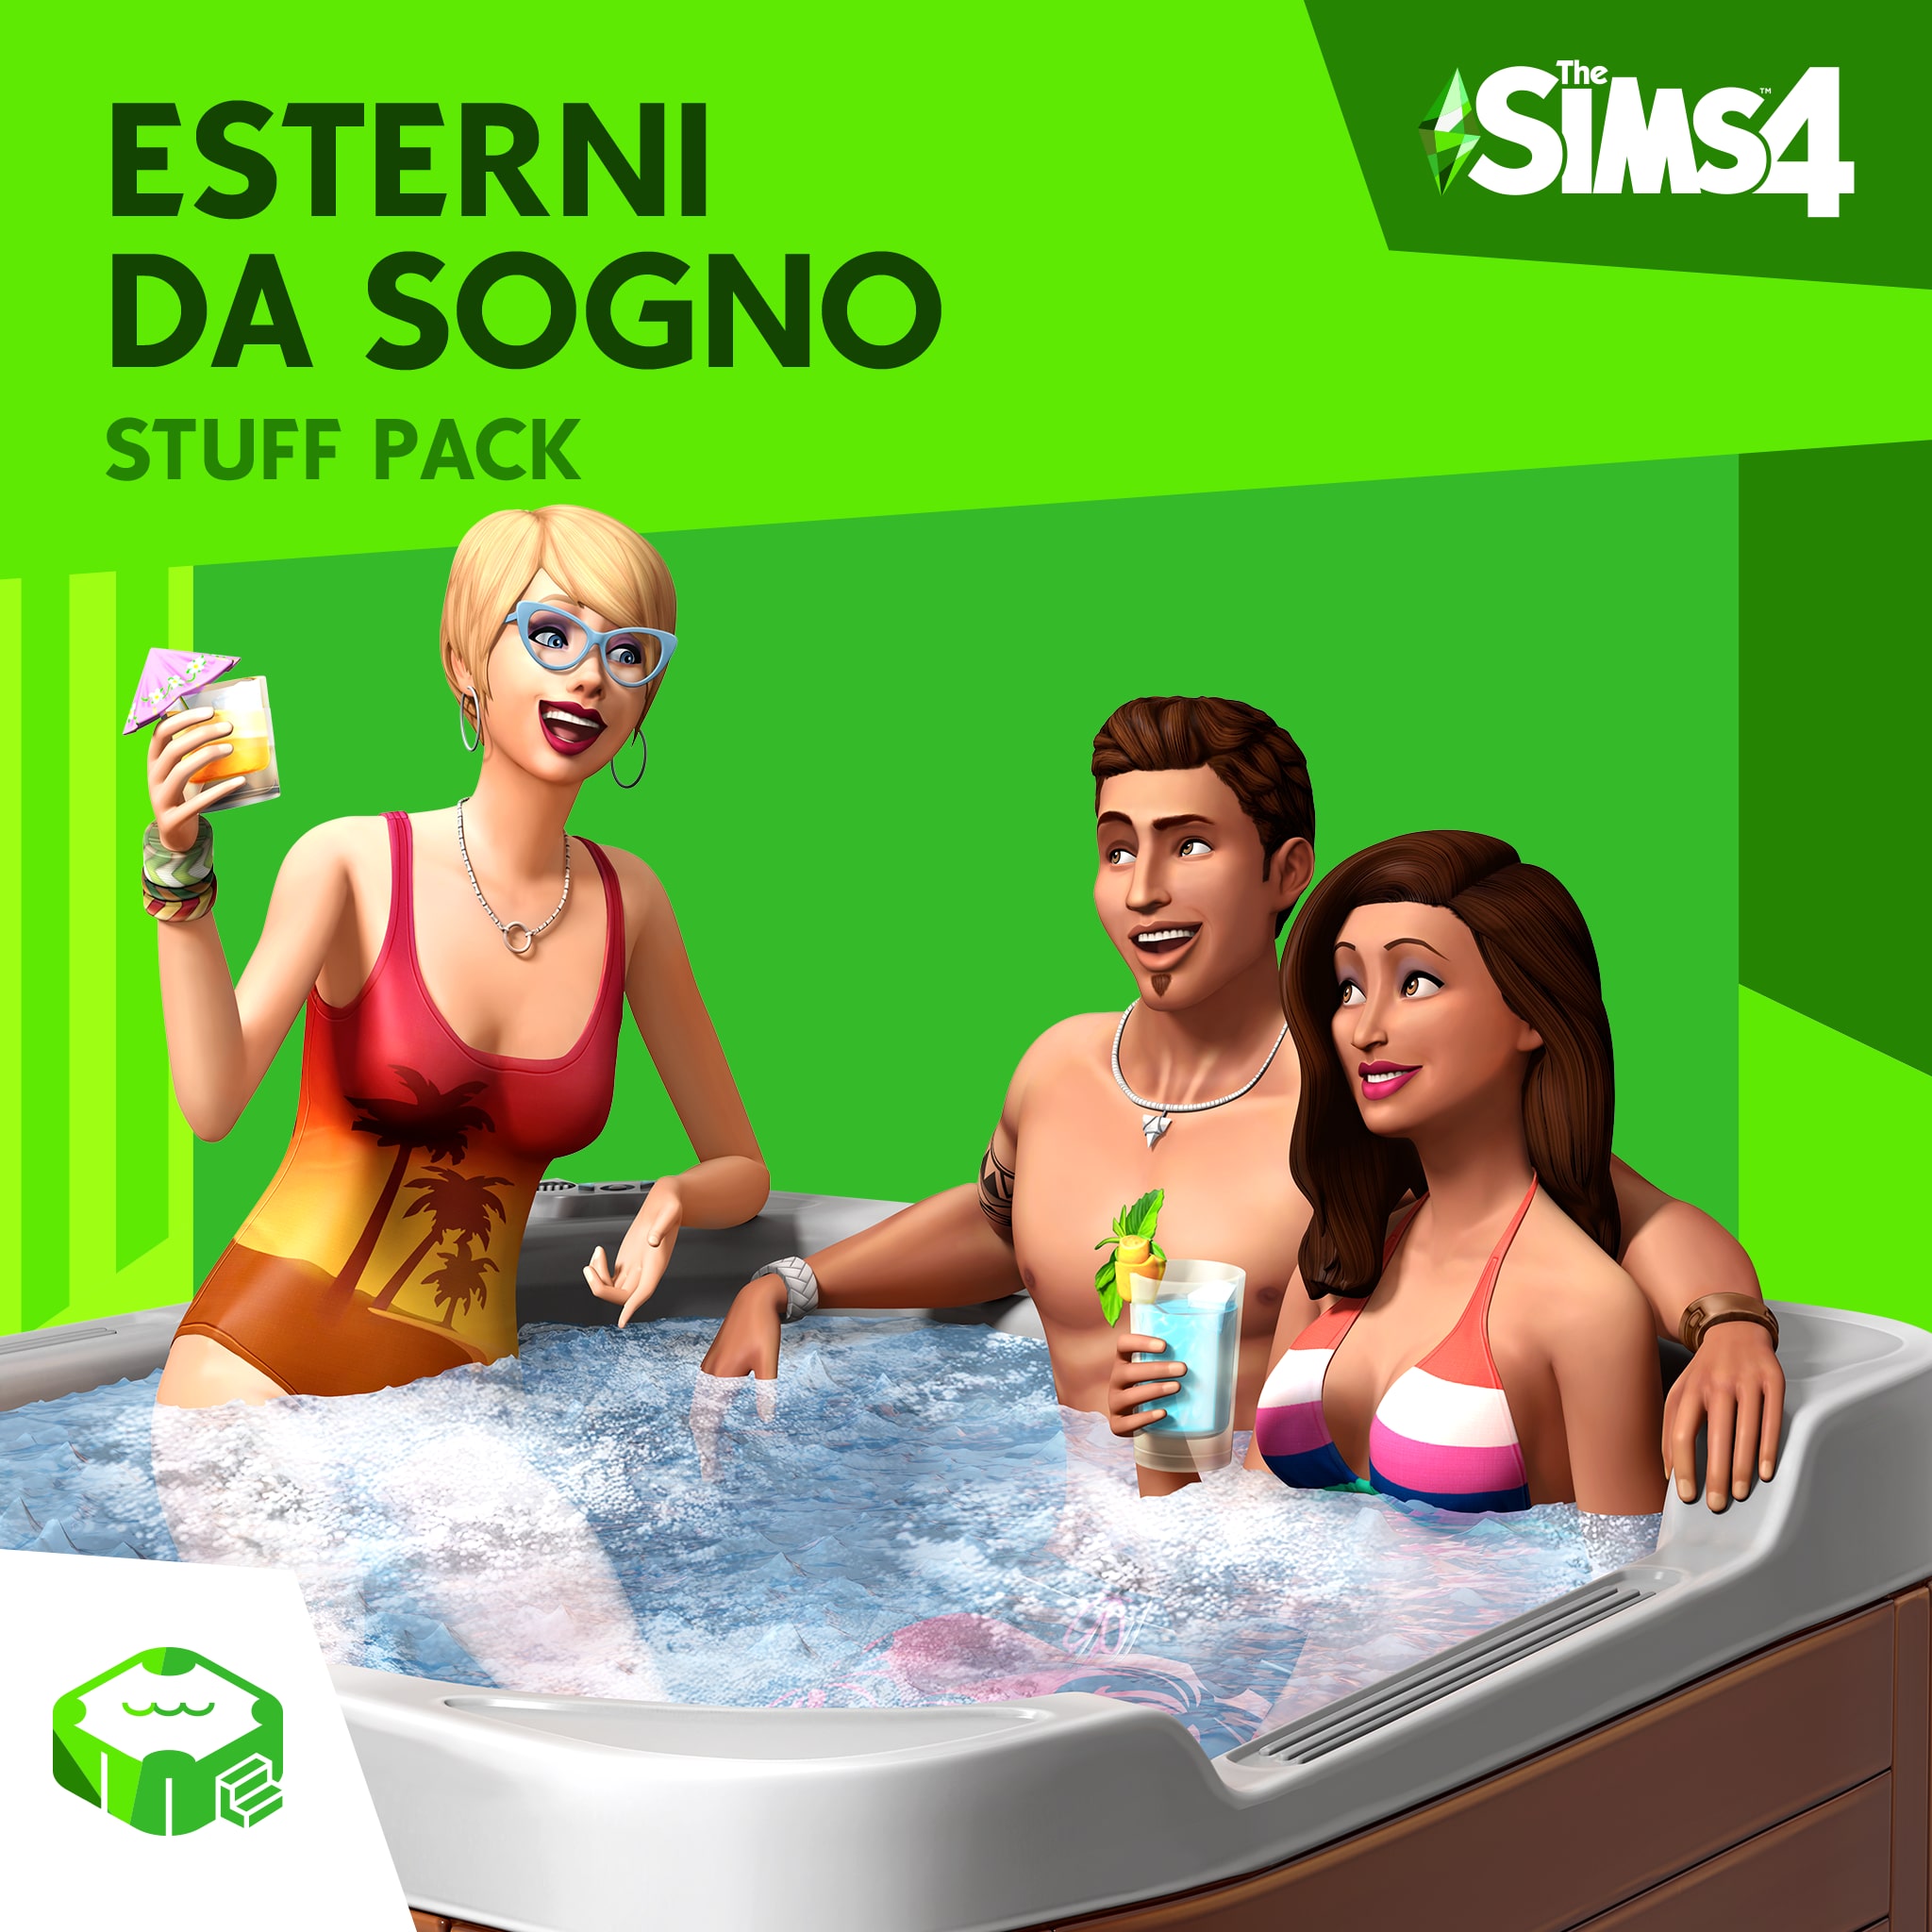 The Sims™ 4 Esterni da Sogno Stuff